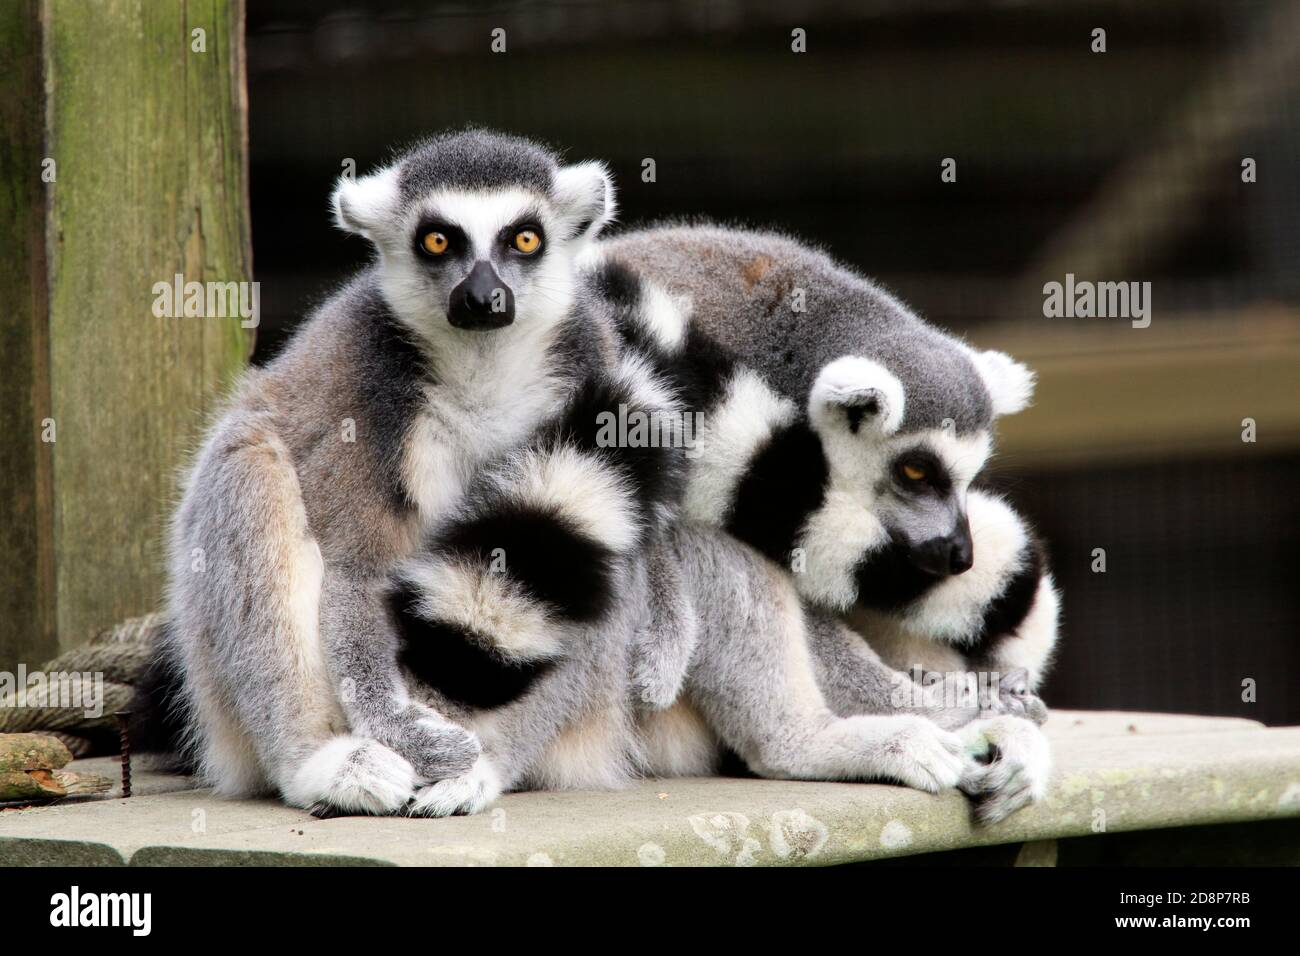 Due lemuri con coda ad anello, Lemur catta, allo zoo della contea di Cape May, New Jersey, USA Foto Stock